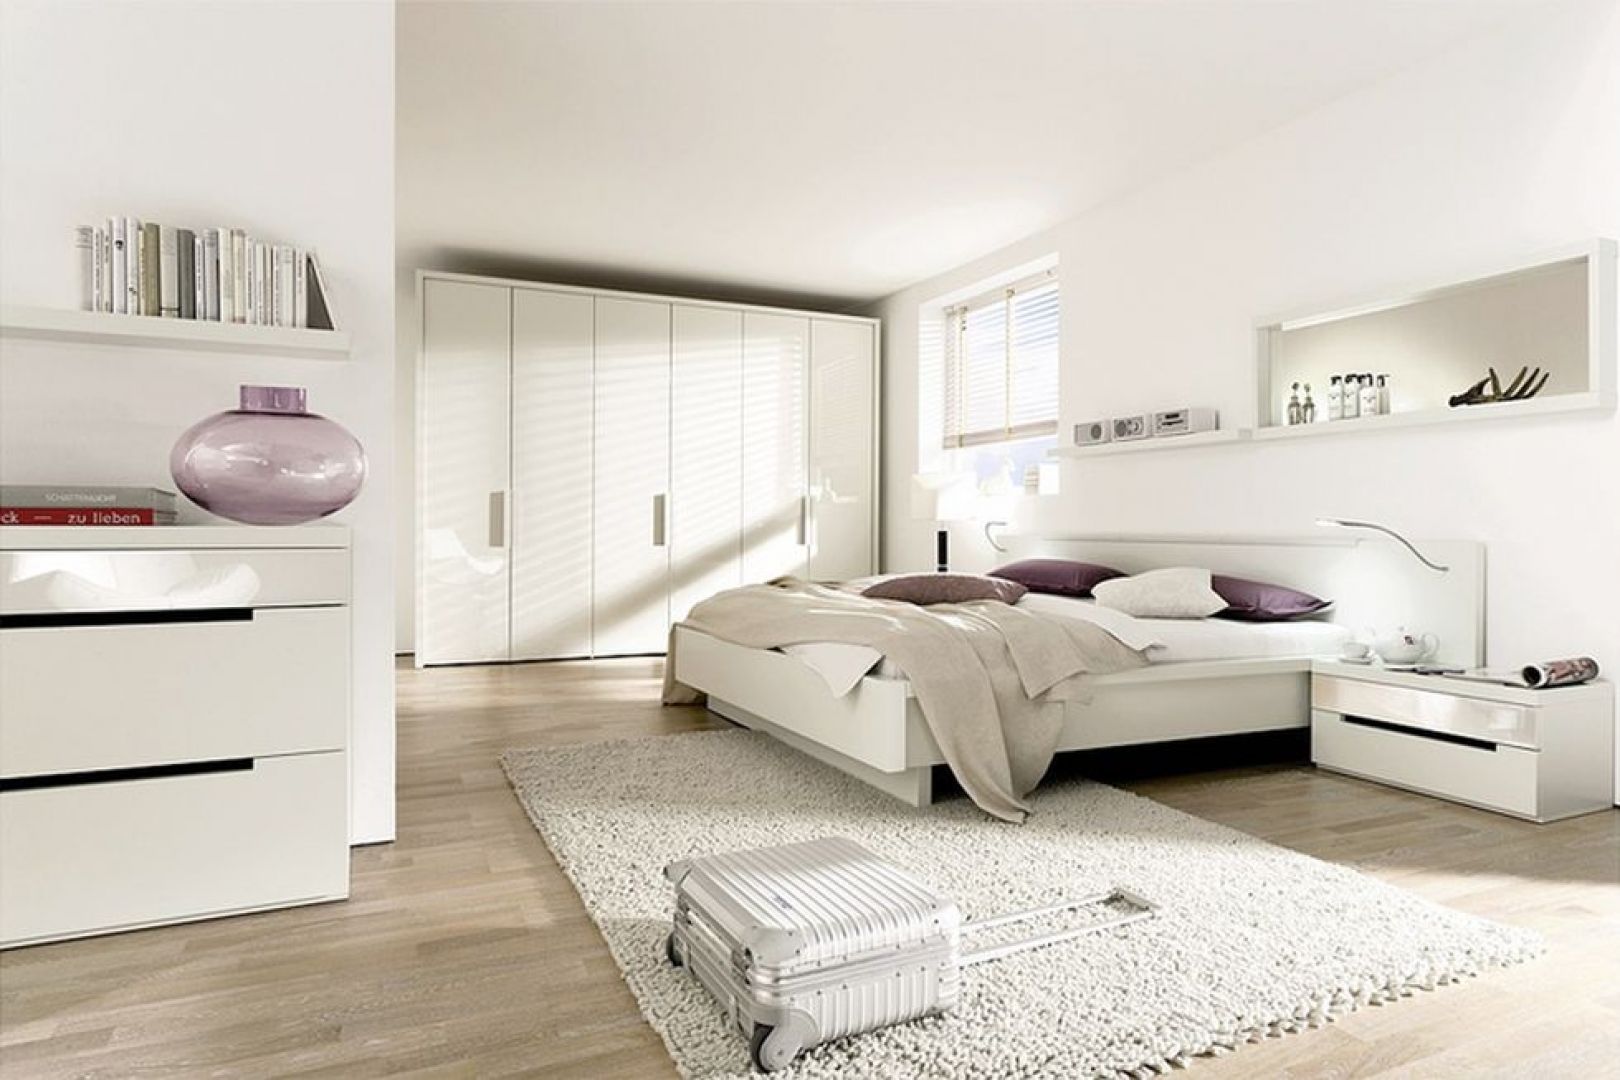 Biel w sypialni to doskonałe rozwiązanie do pomieszczeń małych, ponieważ je optycznie powiększa, ale w dużych sypialniach też nie powinno jej zabraknąć. Szczególnie, jeśli zależy nam na nieskrępowanej przestrzeni. Na zdjęciu kolekcja 